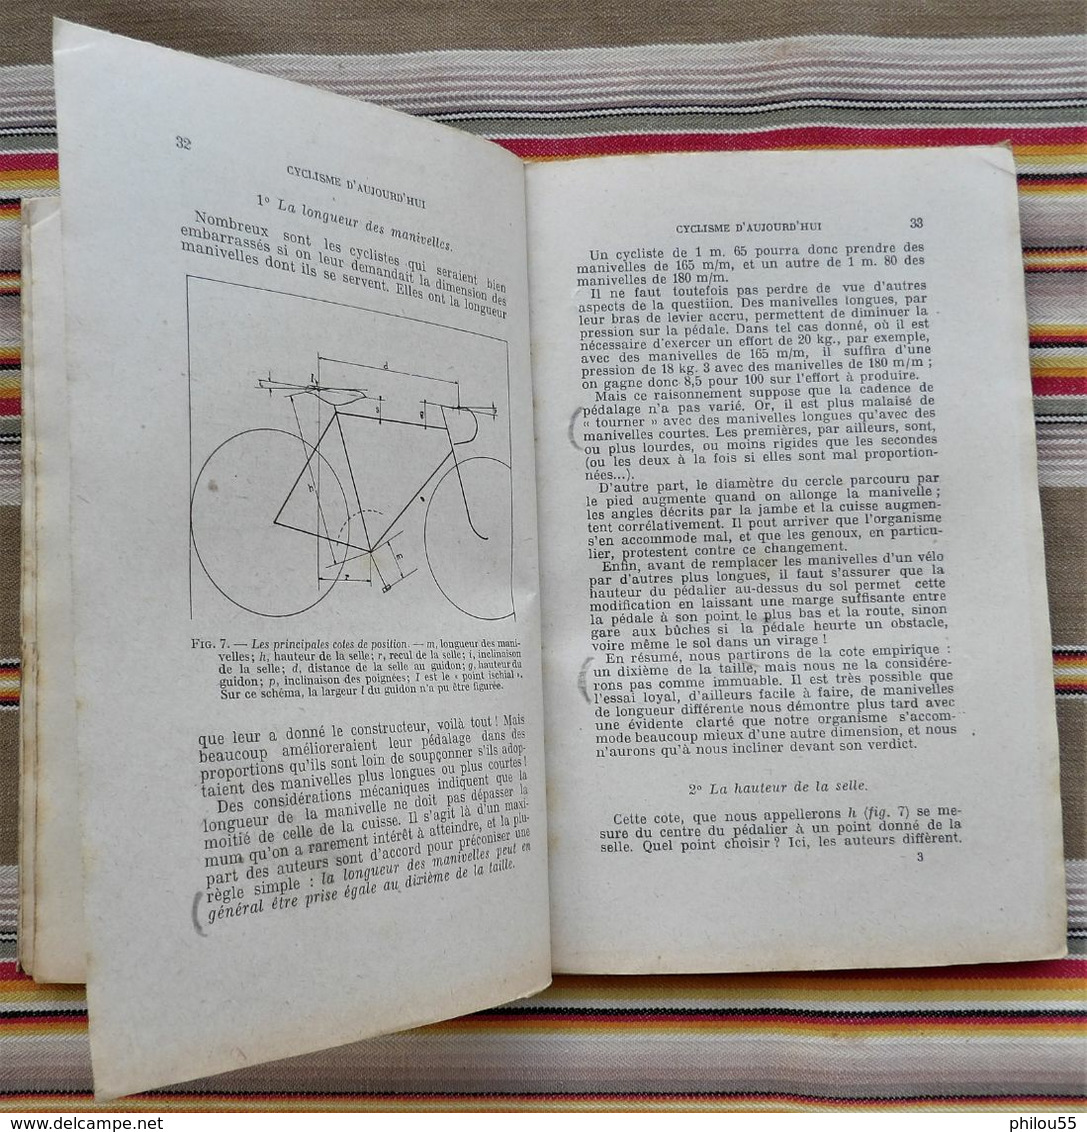 CYCLISME D'AUJOURDHUI par R.J. de MAROLLES 1941 Velo moderne et son utilisation rationnelle TALLANDIER